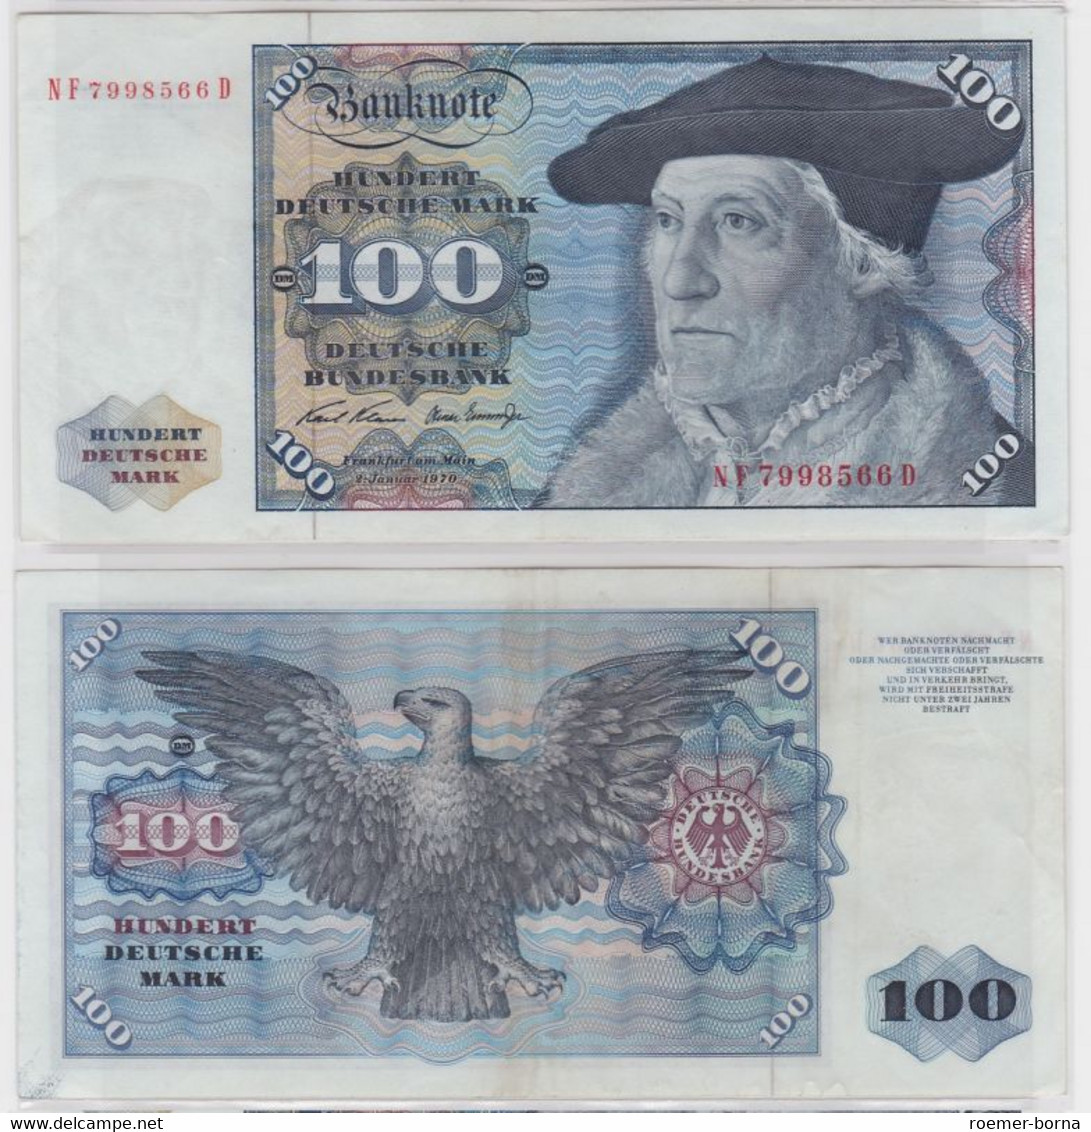 T146514 Banknote 100 DM Deutsche Mark Ro. 273b Schein 2.Jan 1970 KN NF 7998566 D - 100 DM